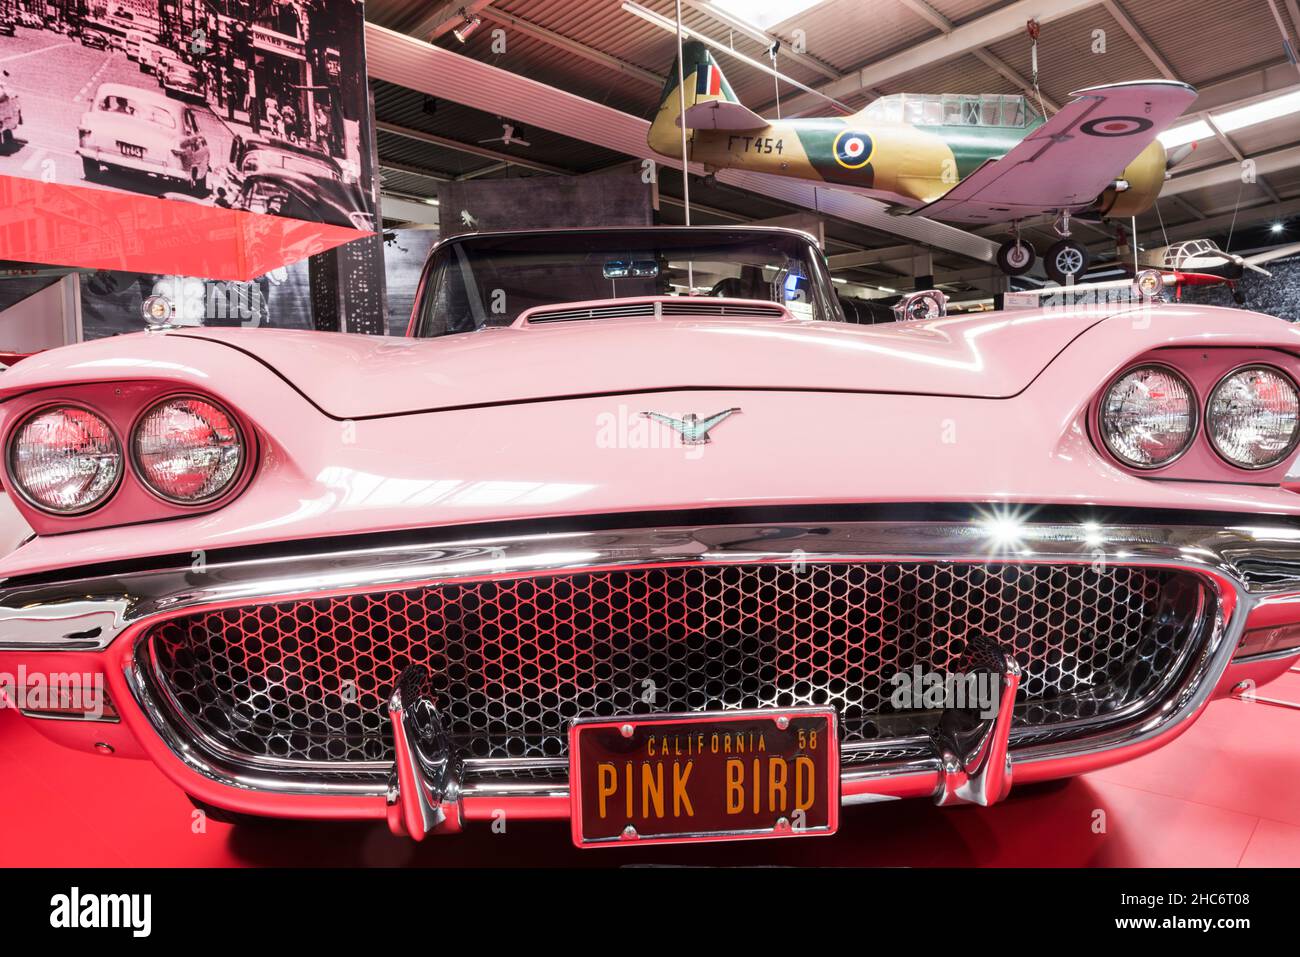 SINSHEIM, DEUTSCHLAND - 8. APRIL 2018: Amerikanischer Oldtimer 1959 Ford Thunderbird Cabriolet in rosa Farbe mit eingravierter Kennzeichen 'Pink Bird' in Th Stockfoto